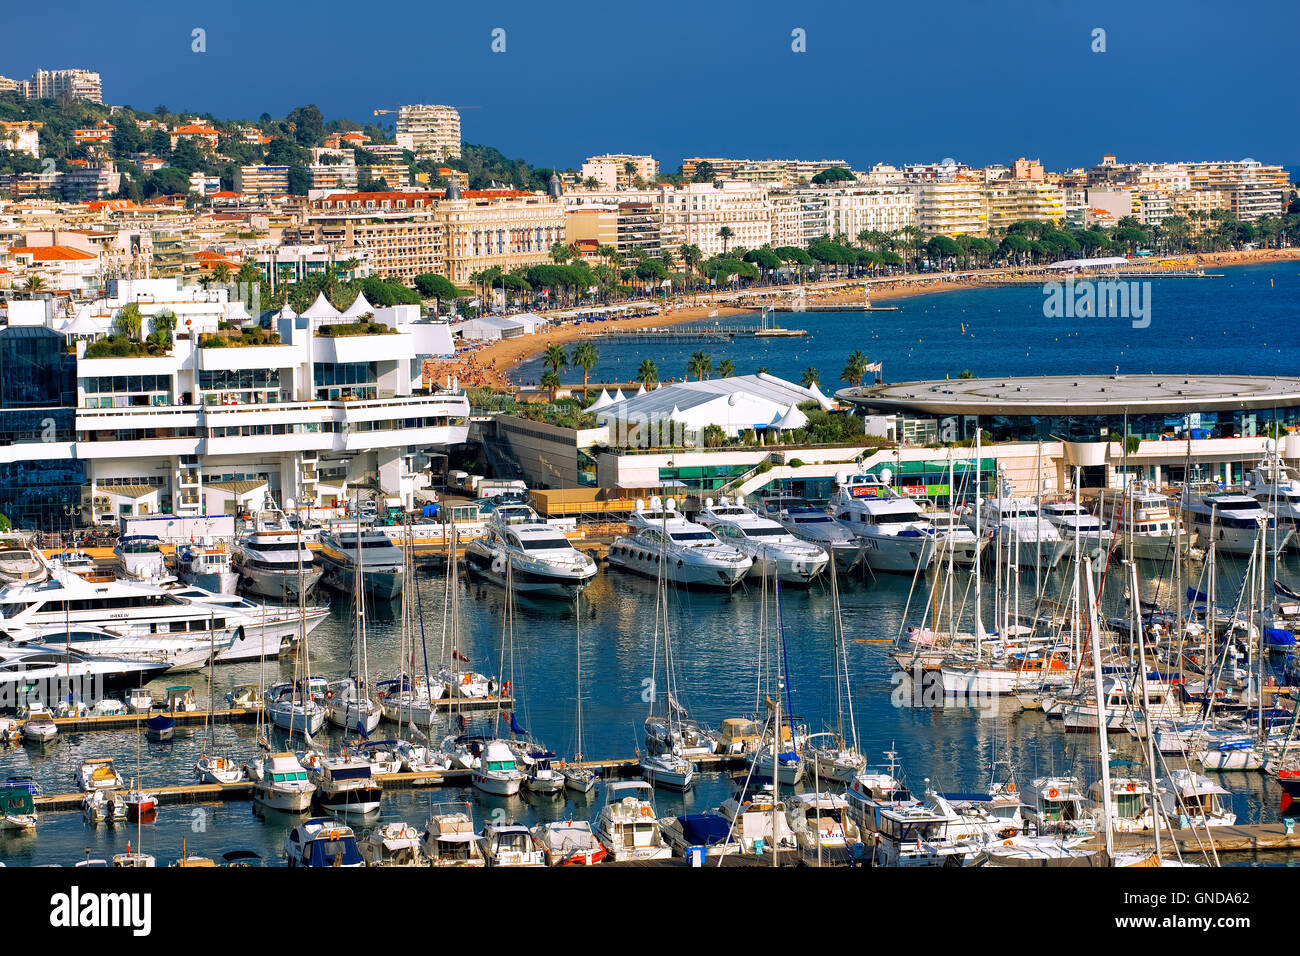 Le port de Cannes, France Banque D'Images